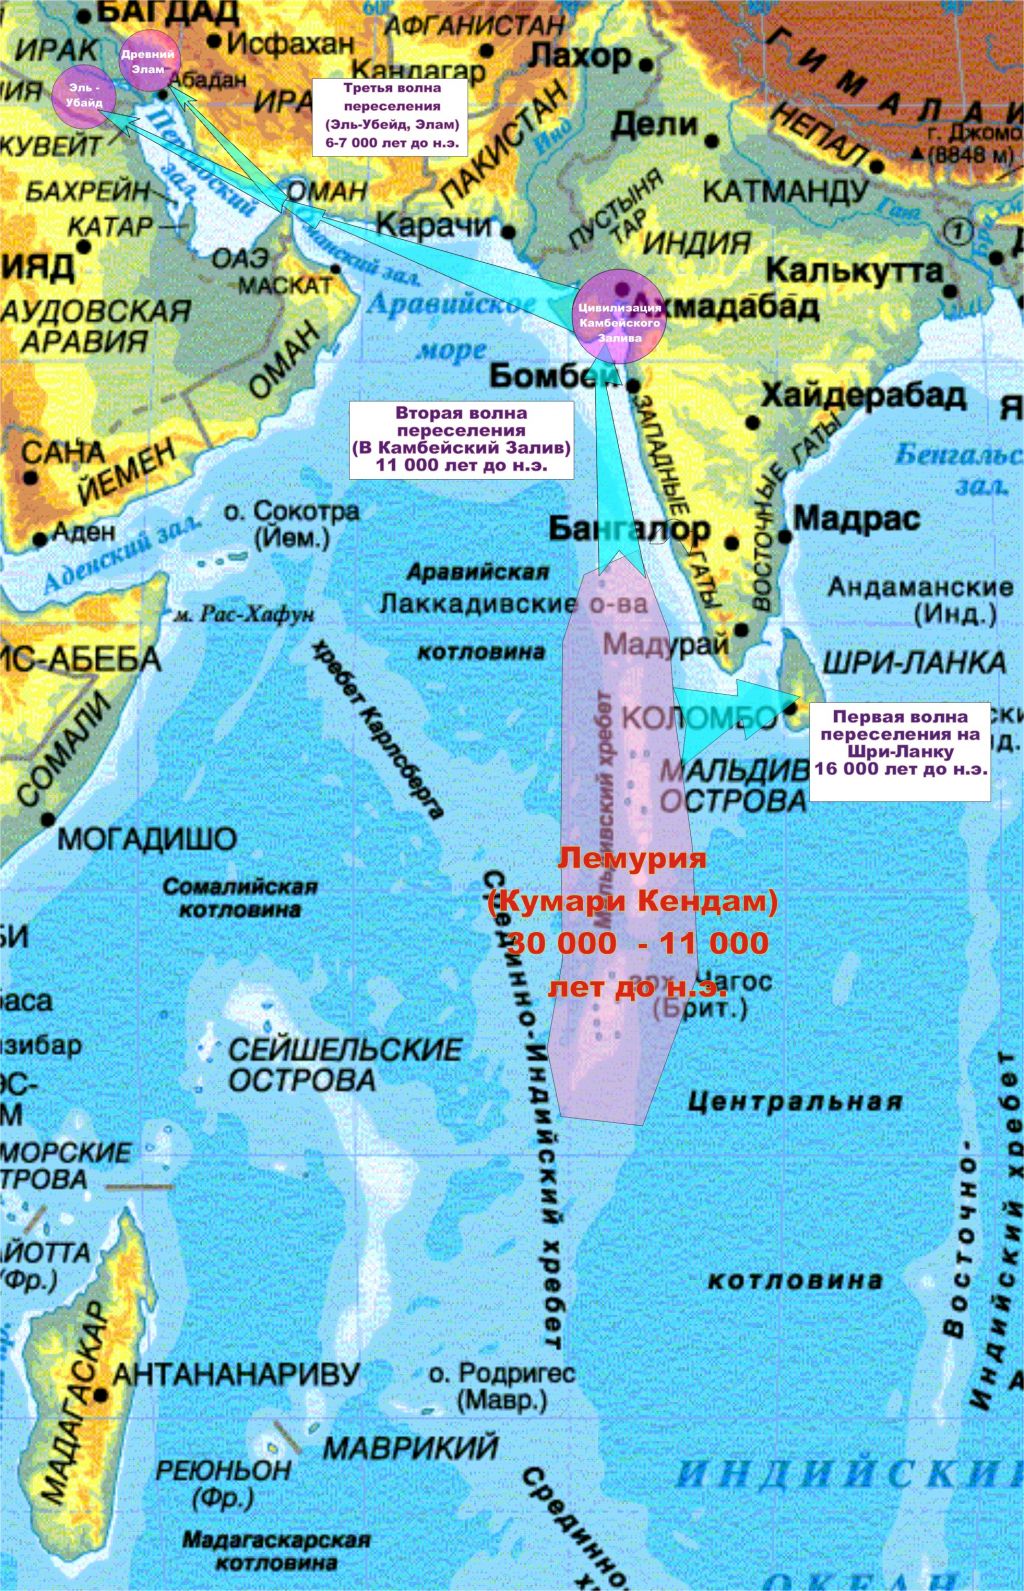 Моря омываемые индийским океаном. Андаманское море на карте индийского океана. Индийский океан на карте. Острова индийского океана на карте. Политическая карта индийского океана.